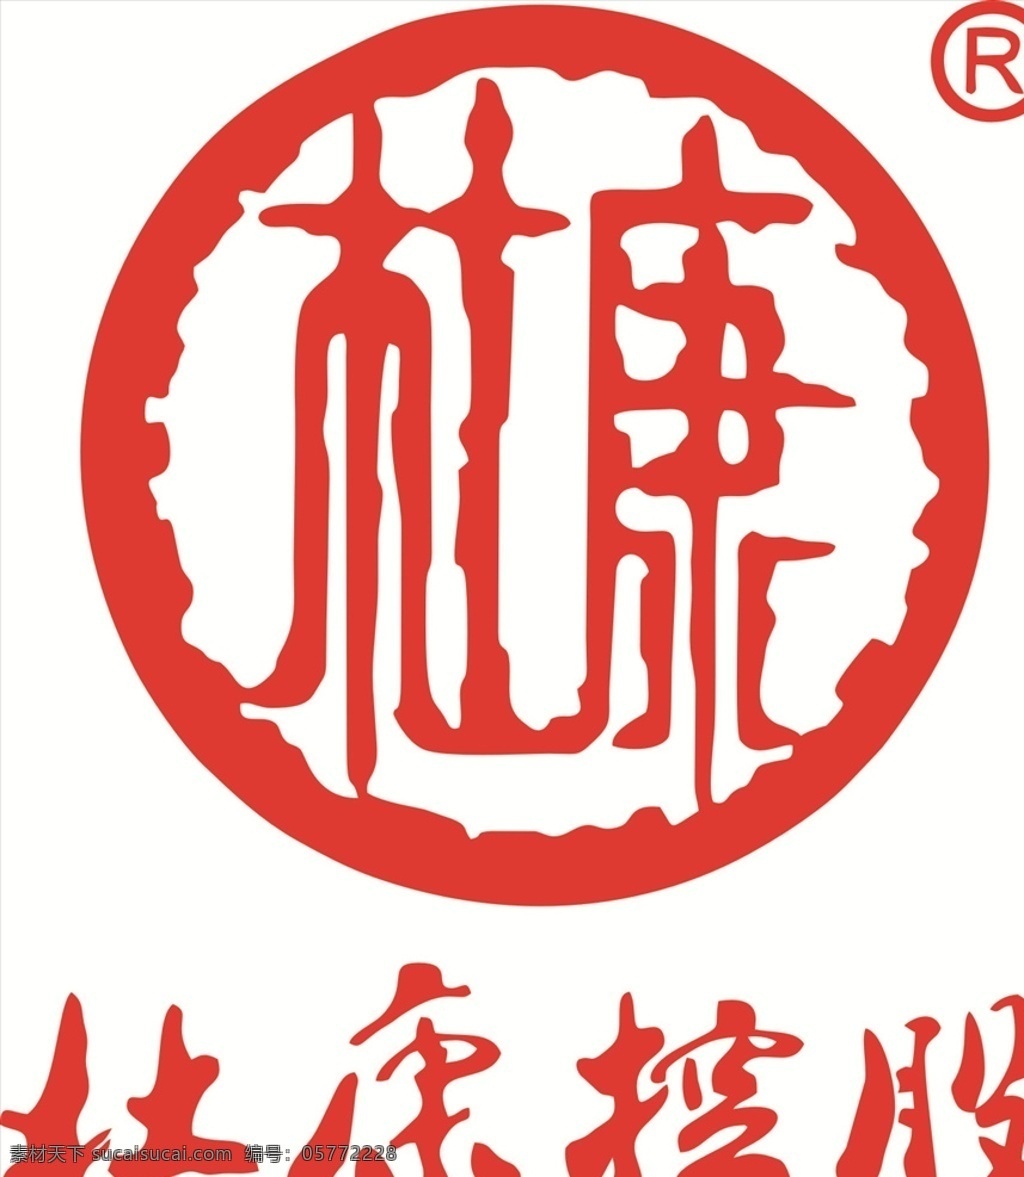 杜康图片 杜康 杜康标志 杜康logo 杜康酒 杜康标识 杜康白酒 杜康控股 企业logo